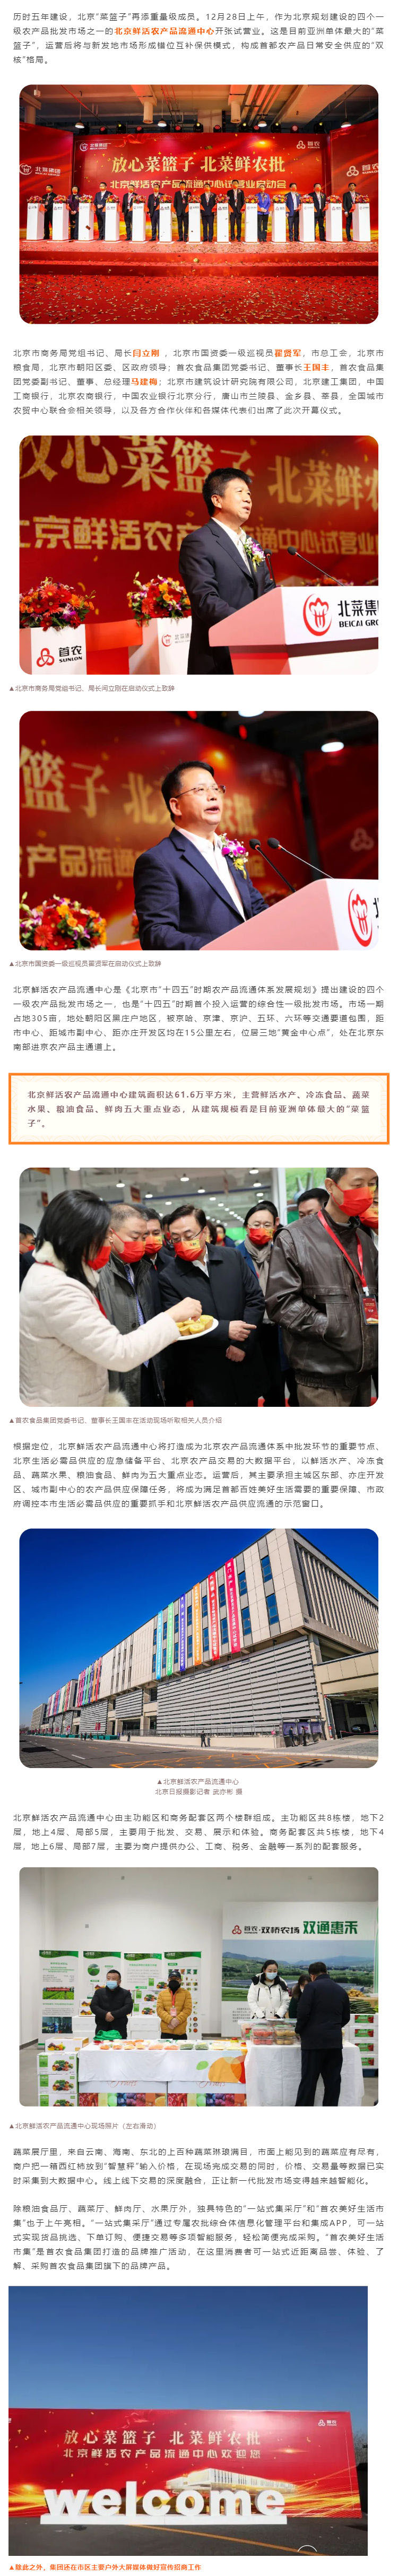 亚洲最大丨北京鲜活农产品流通中心今起开张试营业_壹伴长图1.jpg